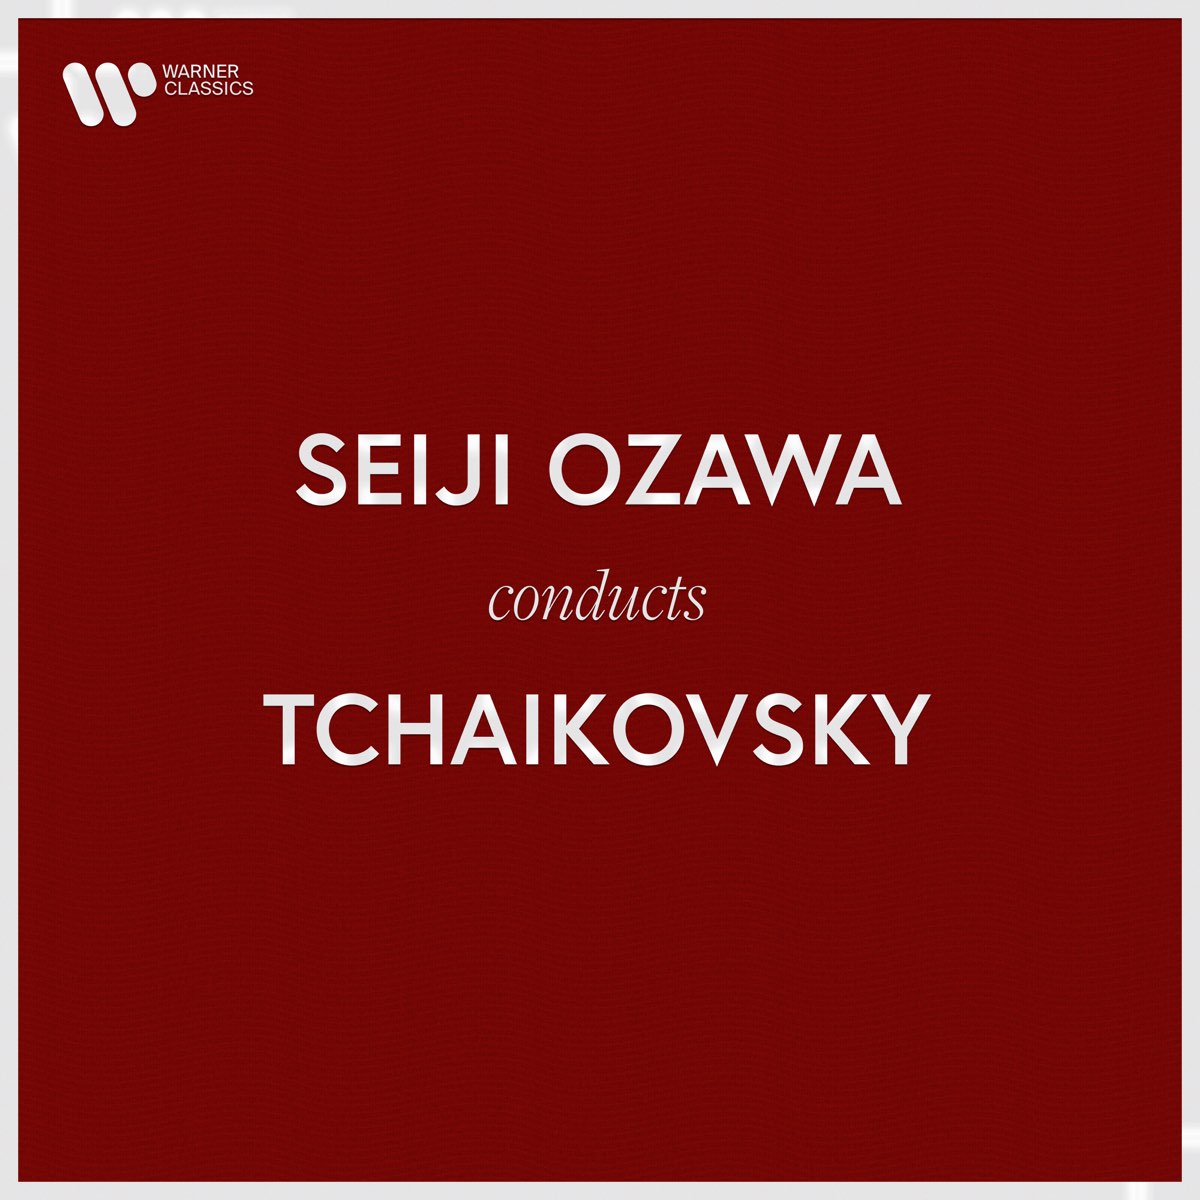 Seiji Ozawa Conducts Tchaikovsky - 小澤征爾的專輯- Apple Music